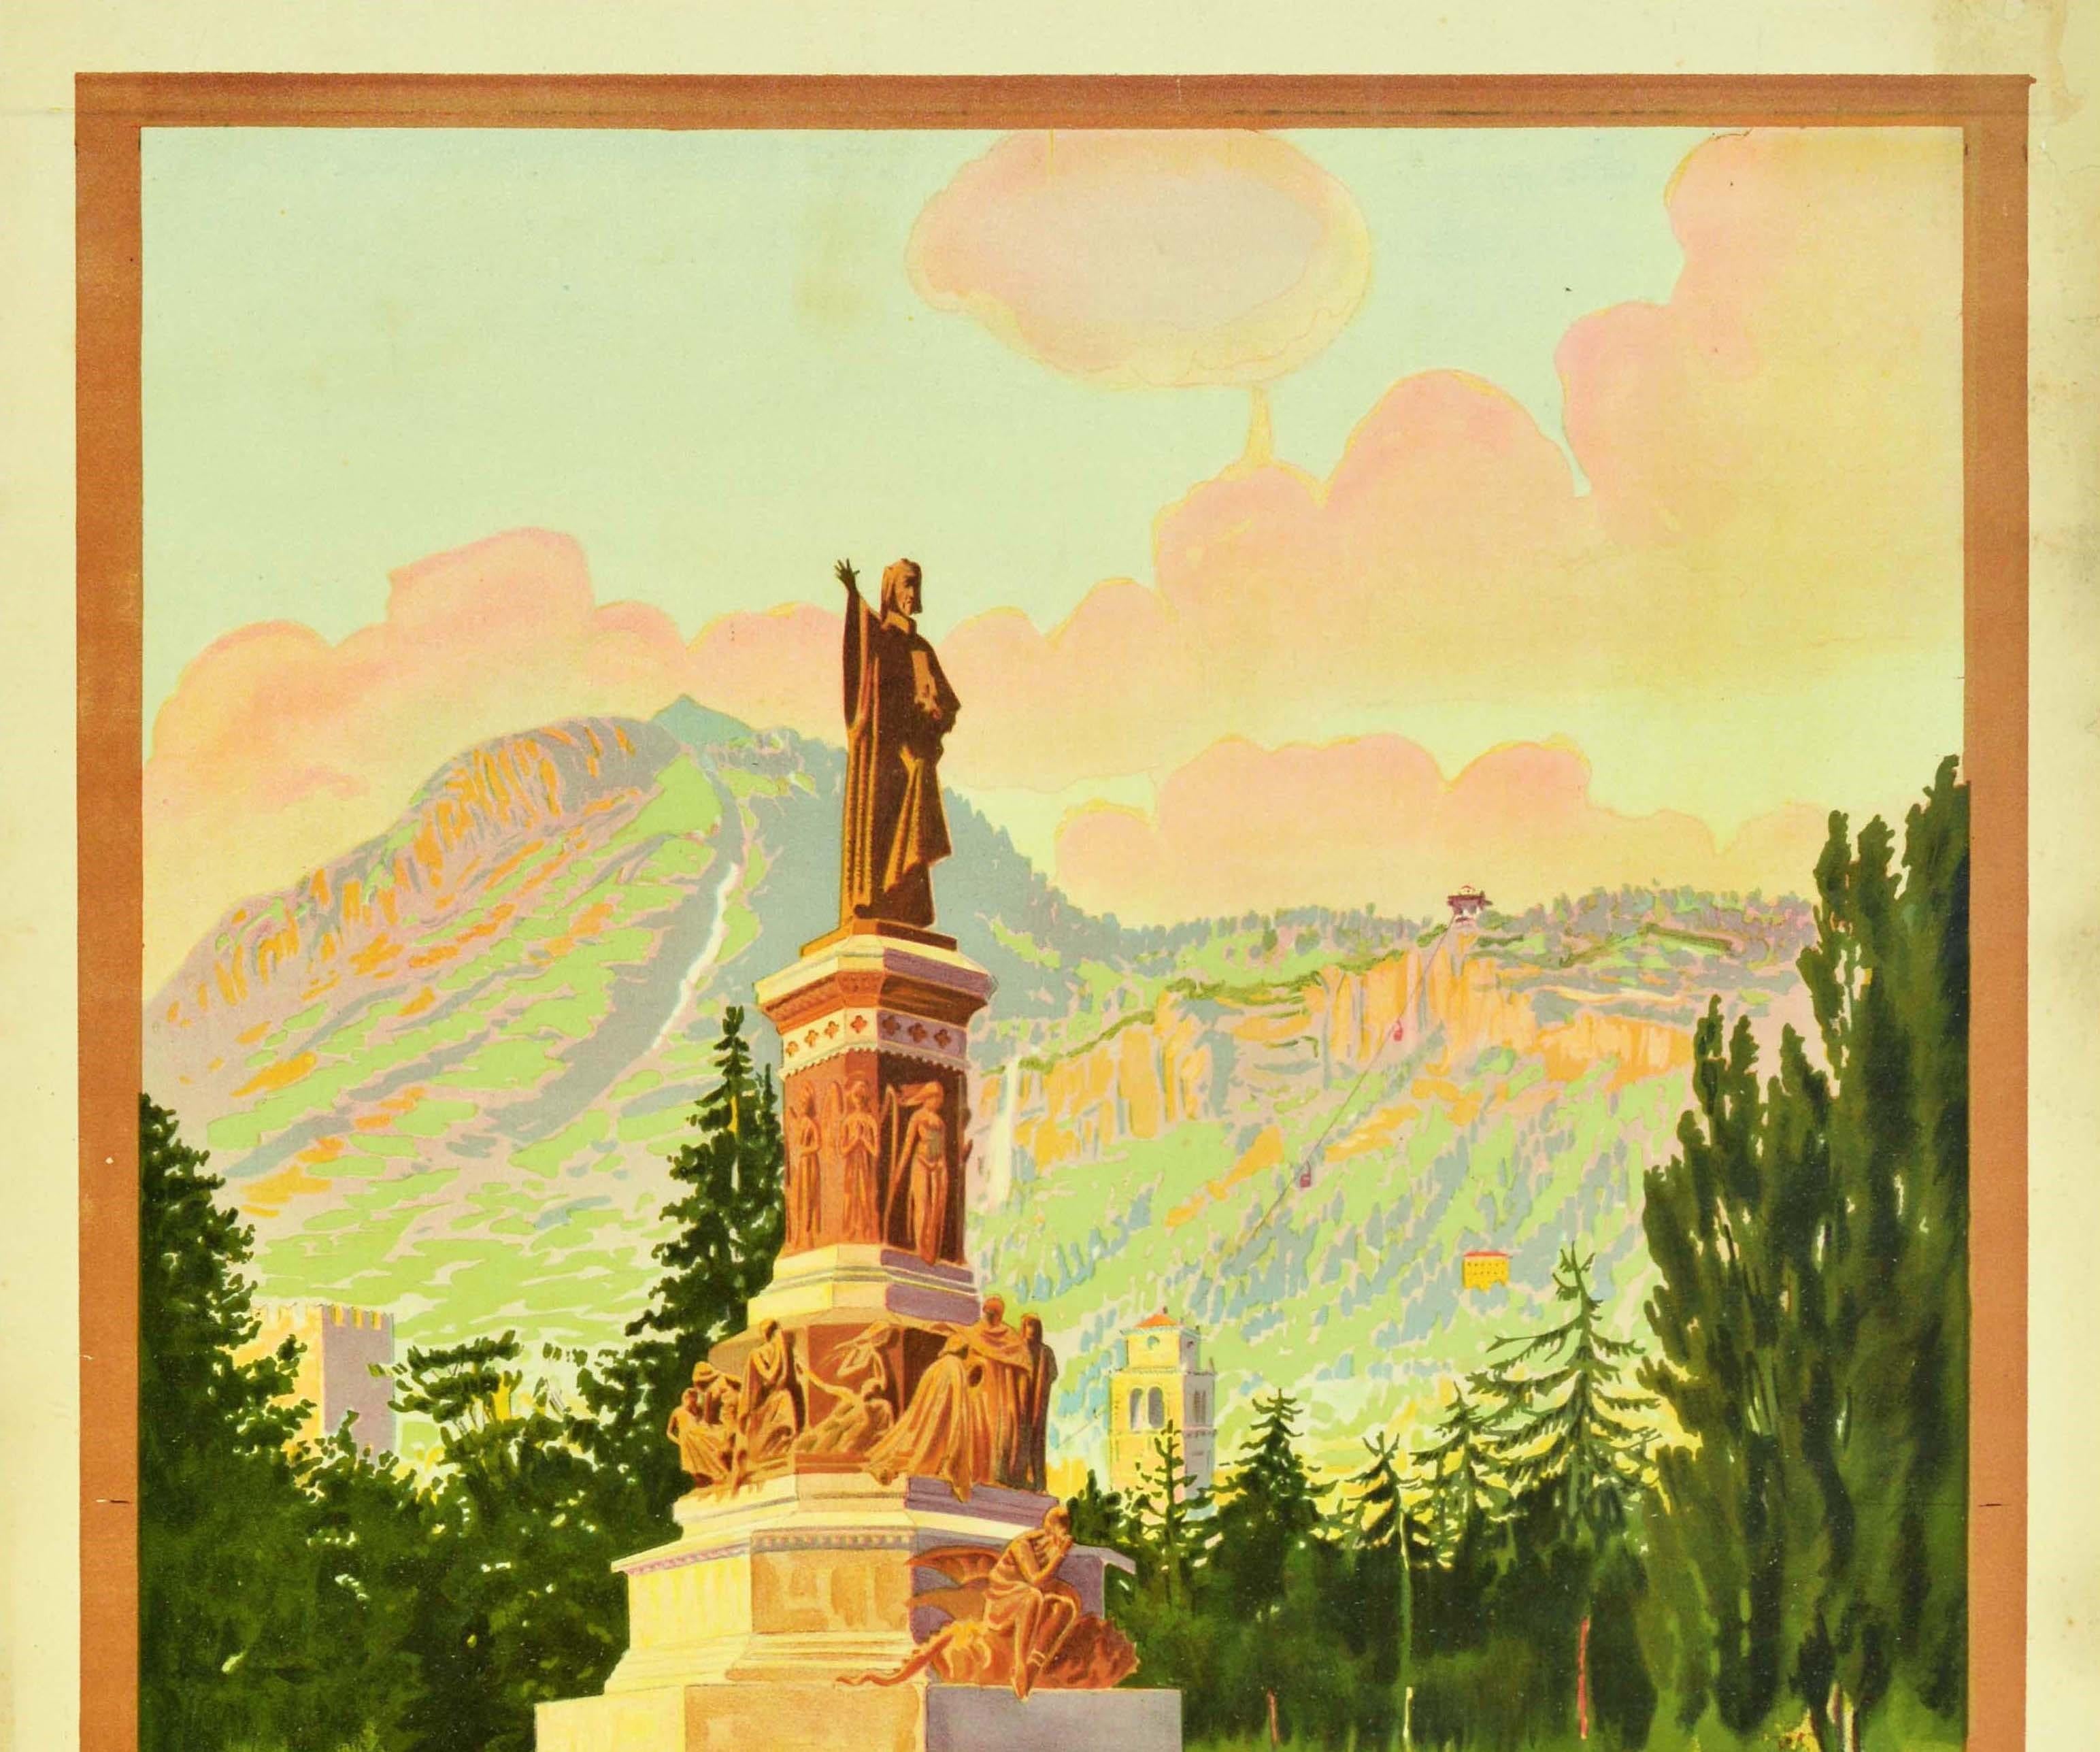 Original-Reiseplakat, das für die norditalienische Alpenstadt Trient wirbt, herausgegeben von ENIT, dem italienischen Fremdenverkehrsamt, und der italienischen Staatsbahn. Es zeigt das historische Dante-Denkmal von 1896, eine Statue des